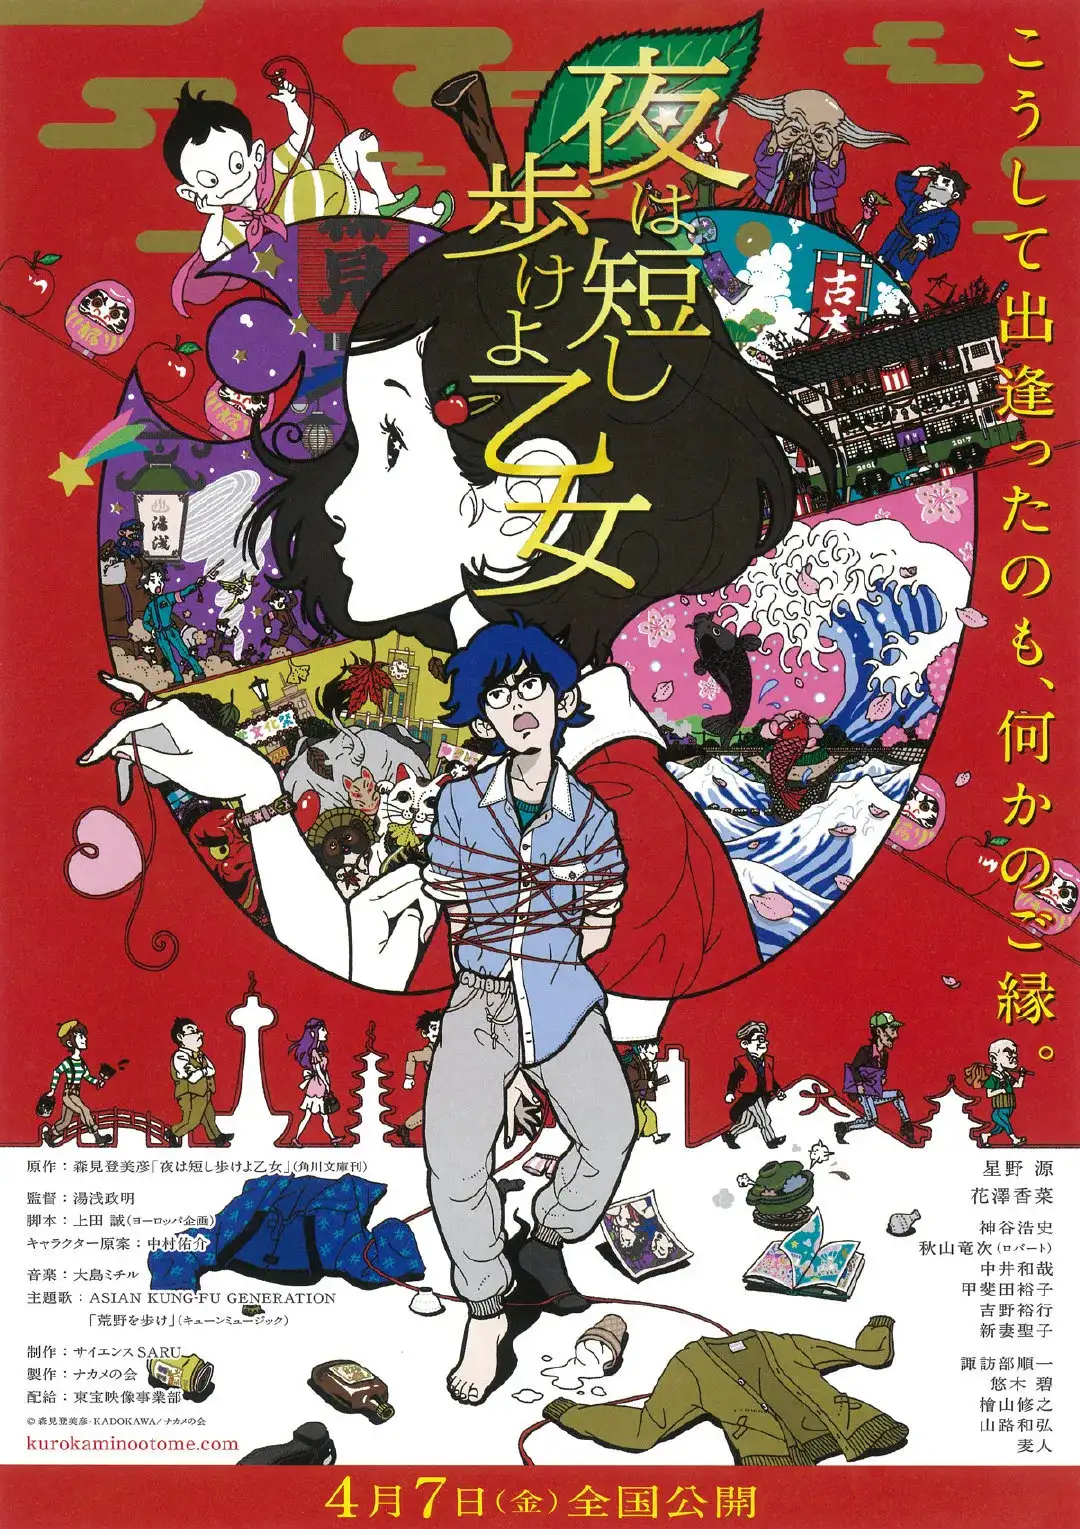 重磅丨西方权威电影杂志眼中的日本动画——《视与听》日本动画电影五十选